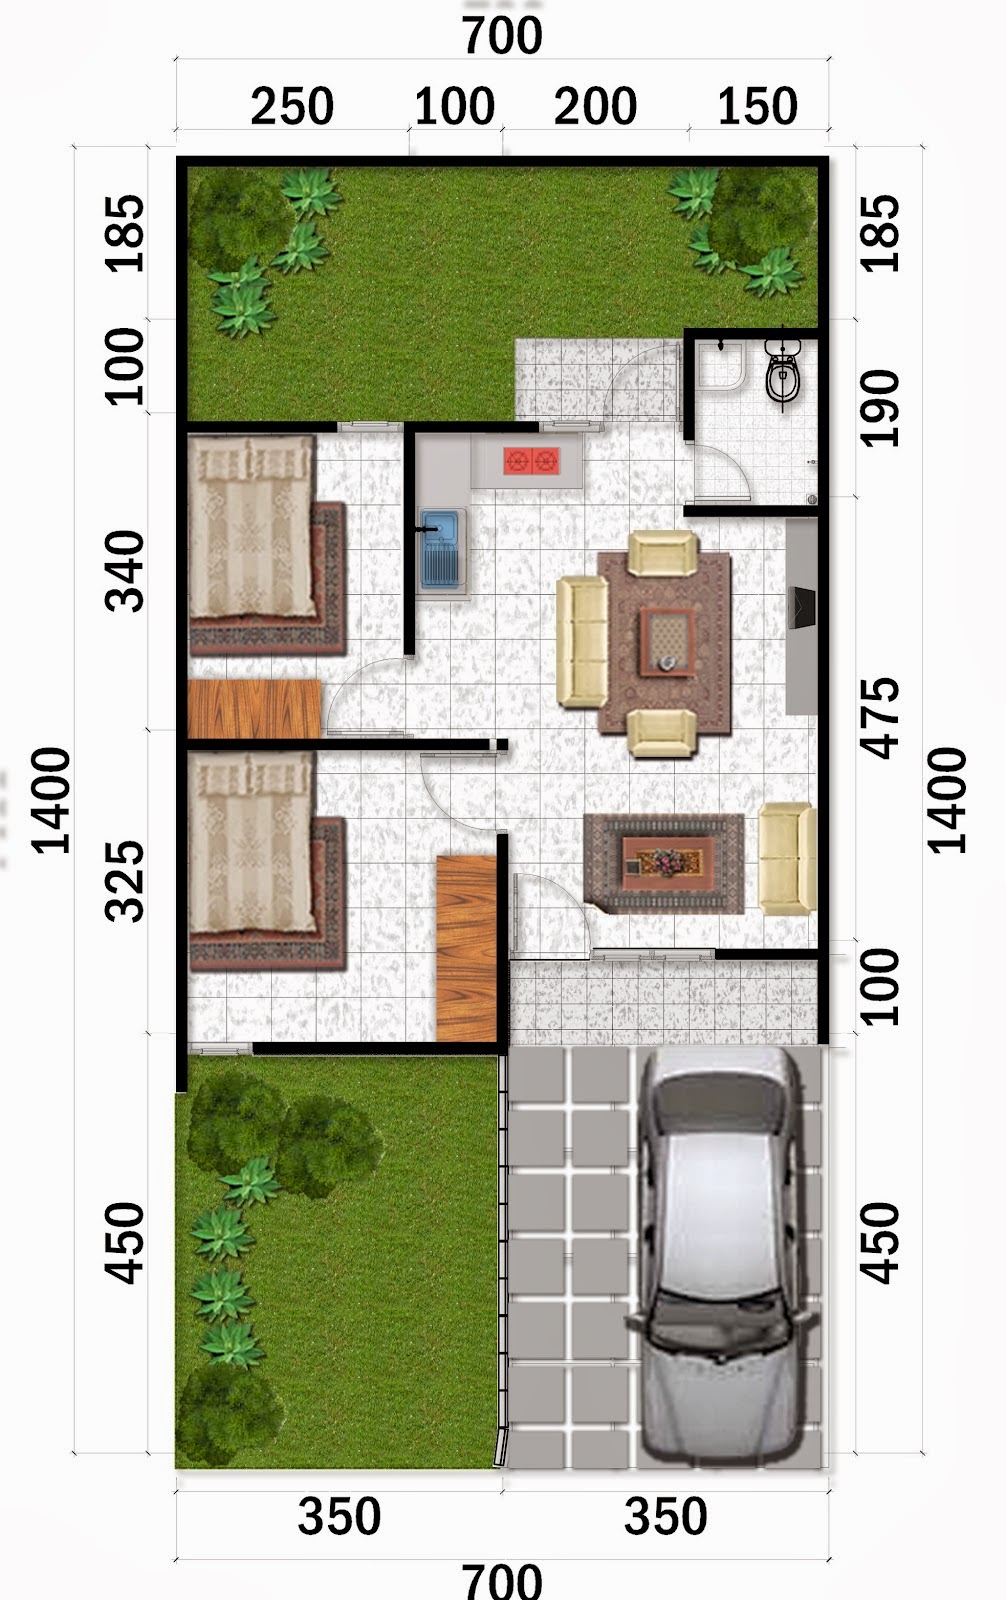 Desain Rumah Minimalis Idaman: Model dan Denah Rumah Minimalis